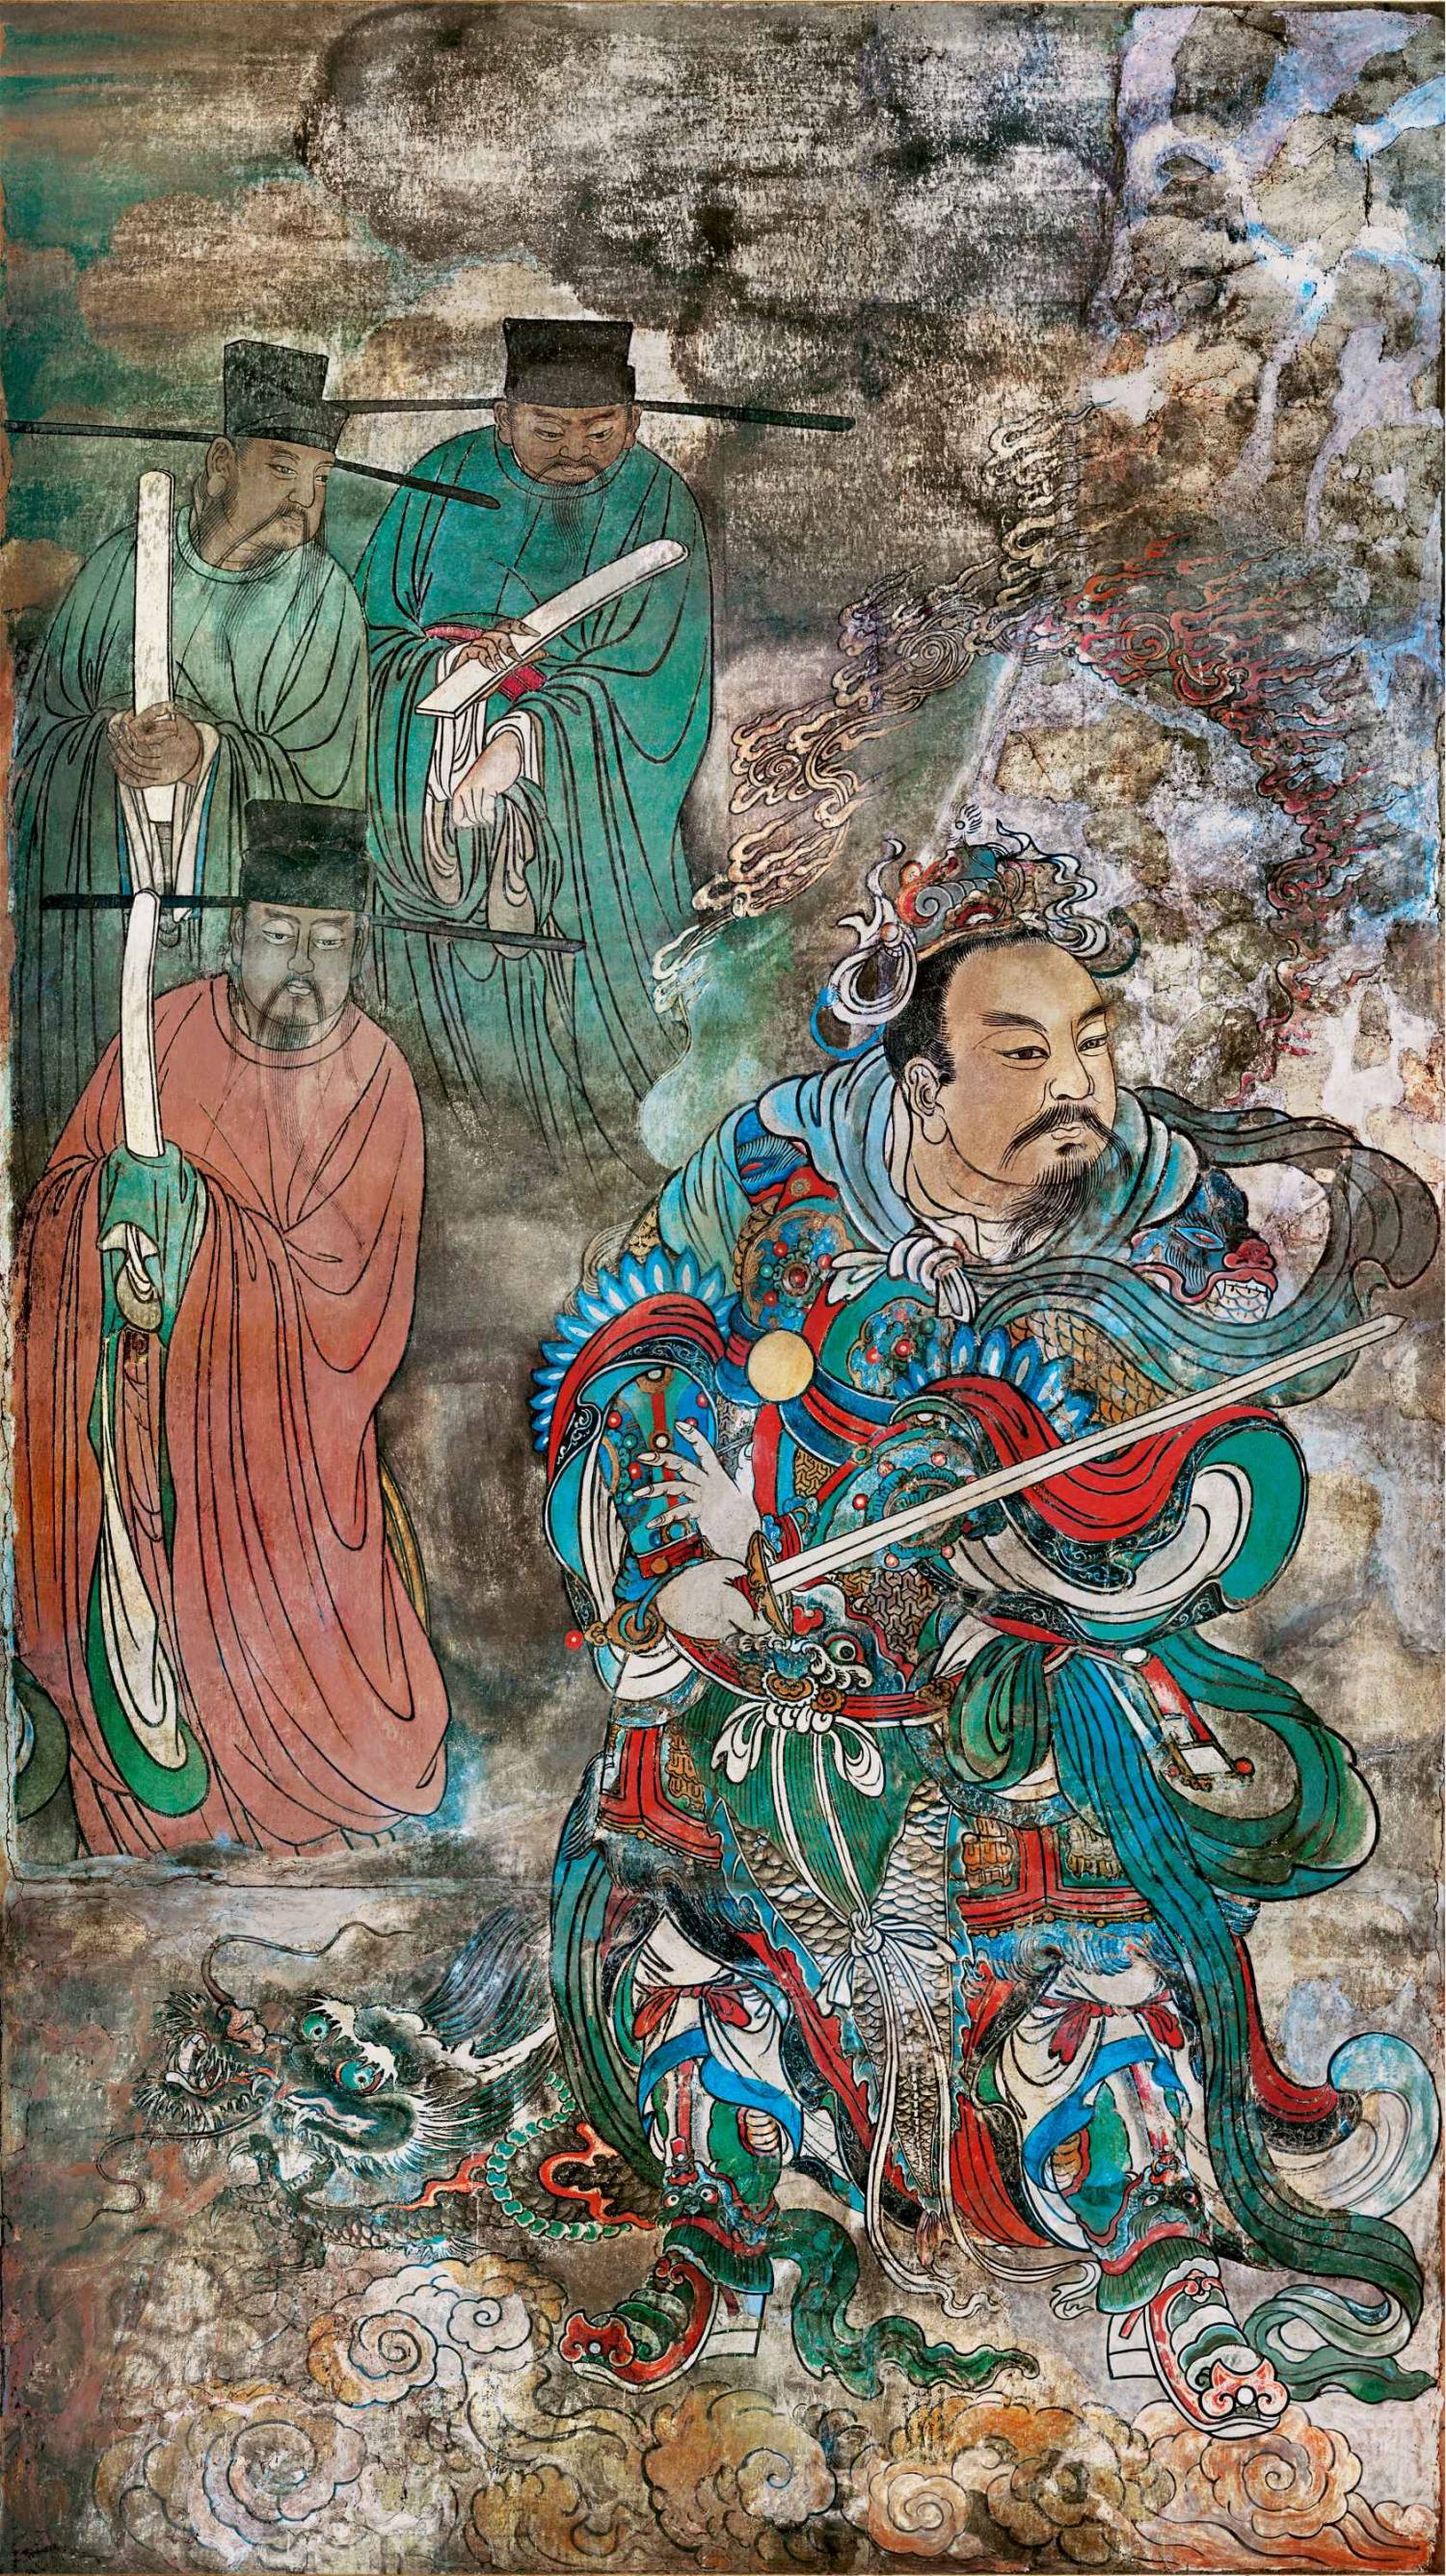 永乐宫壁画《朝元图》第1段压缩版